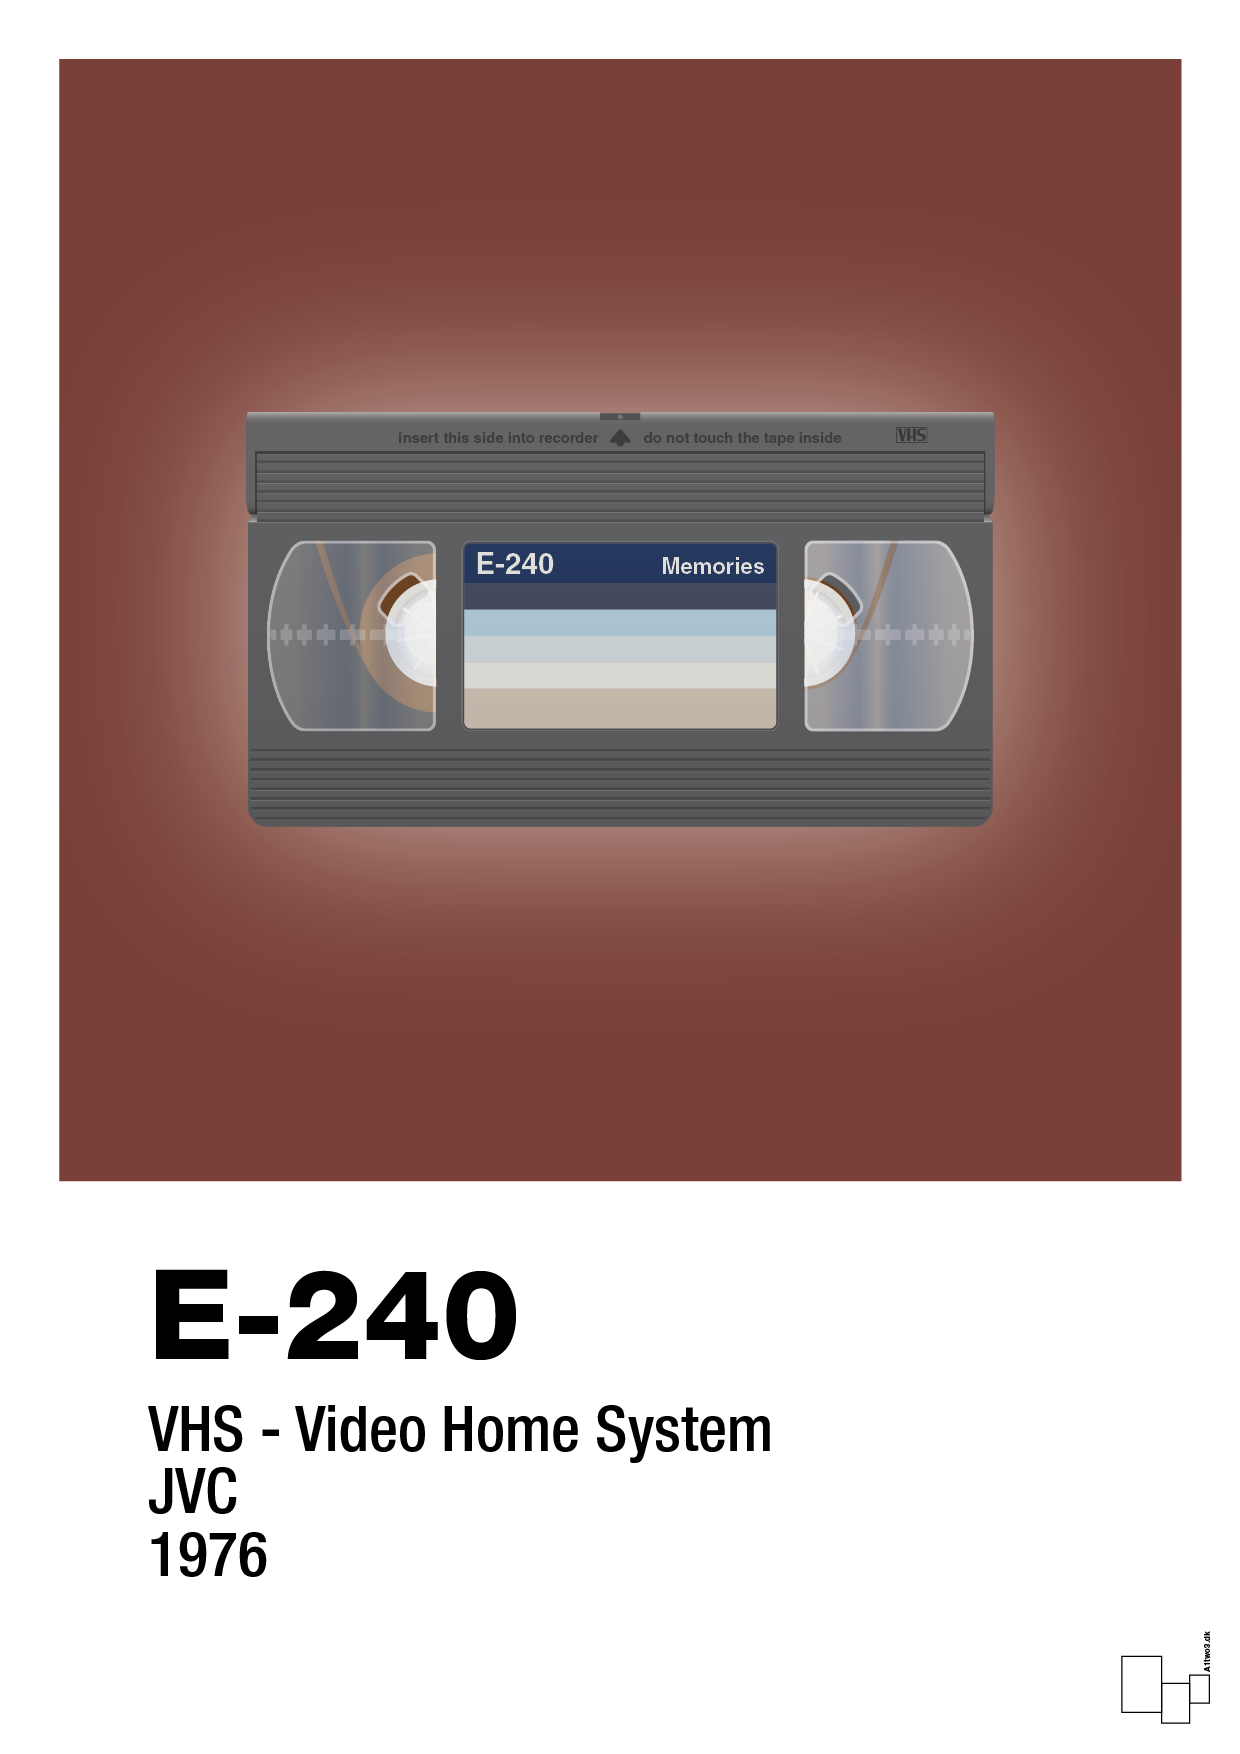 videobånd e-240 - Plakat med Grafik i Red Pepper